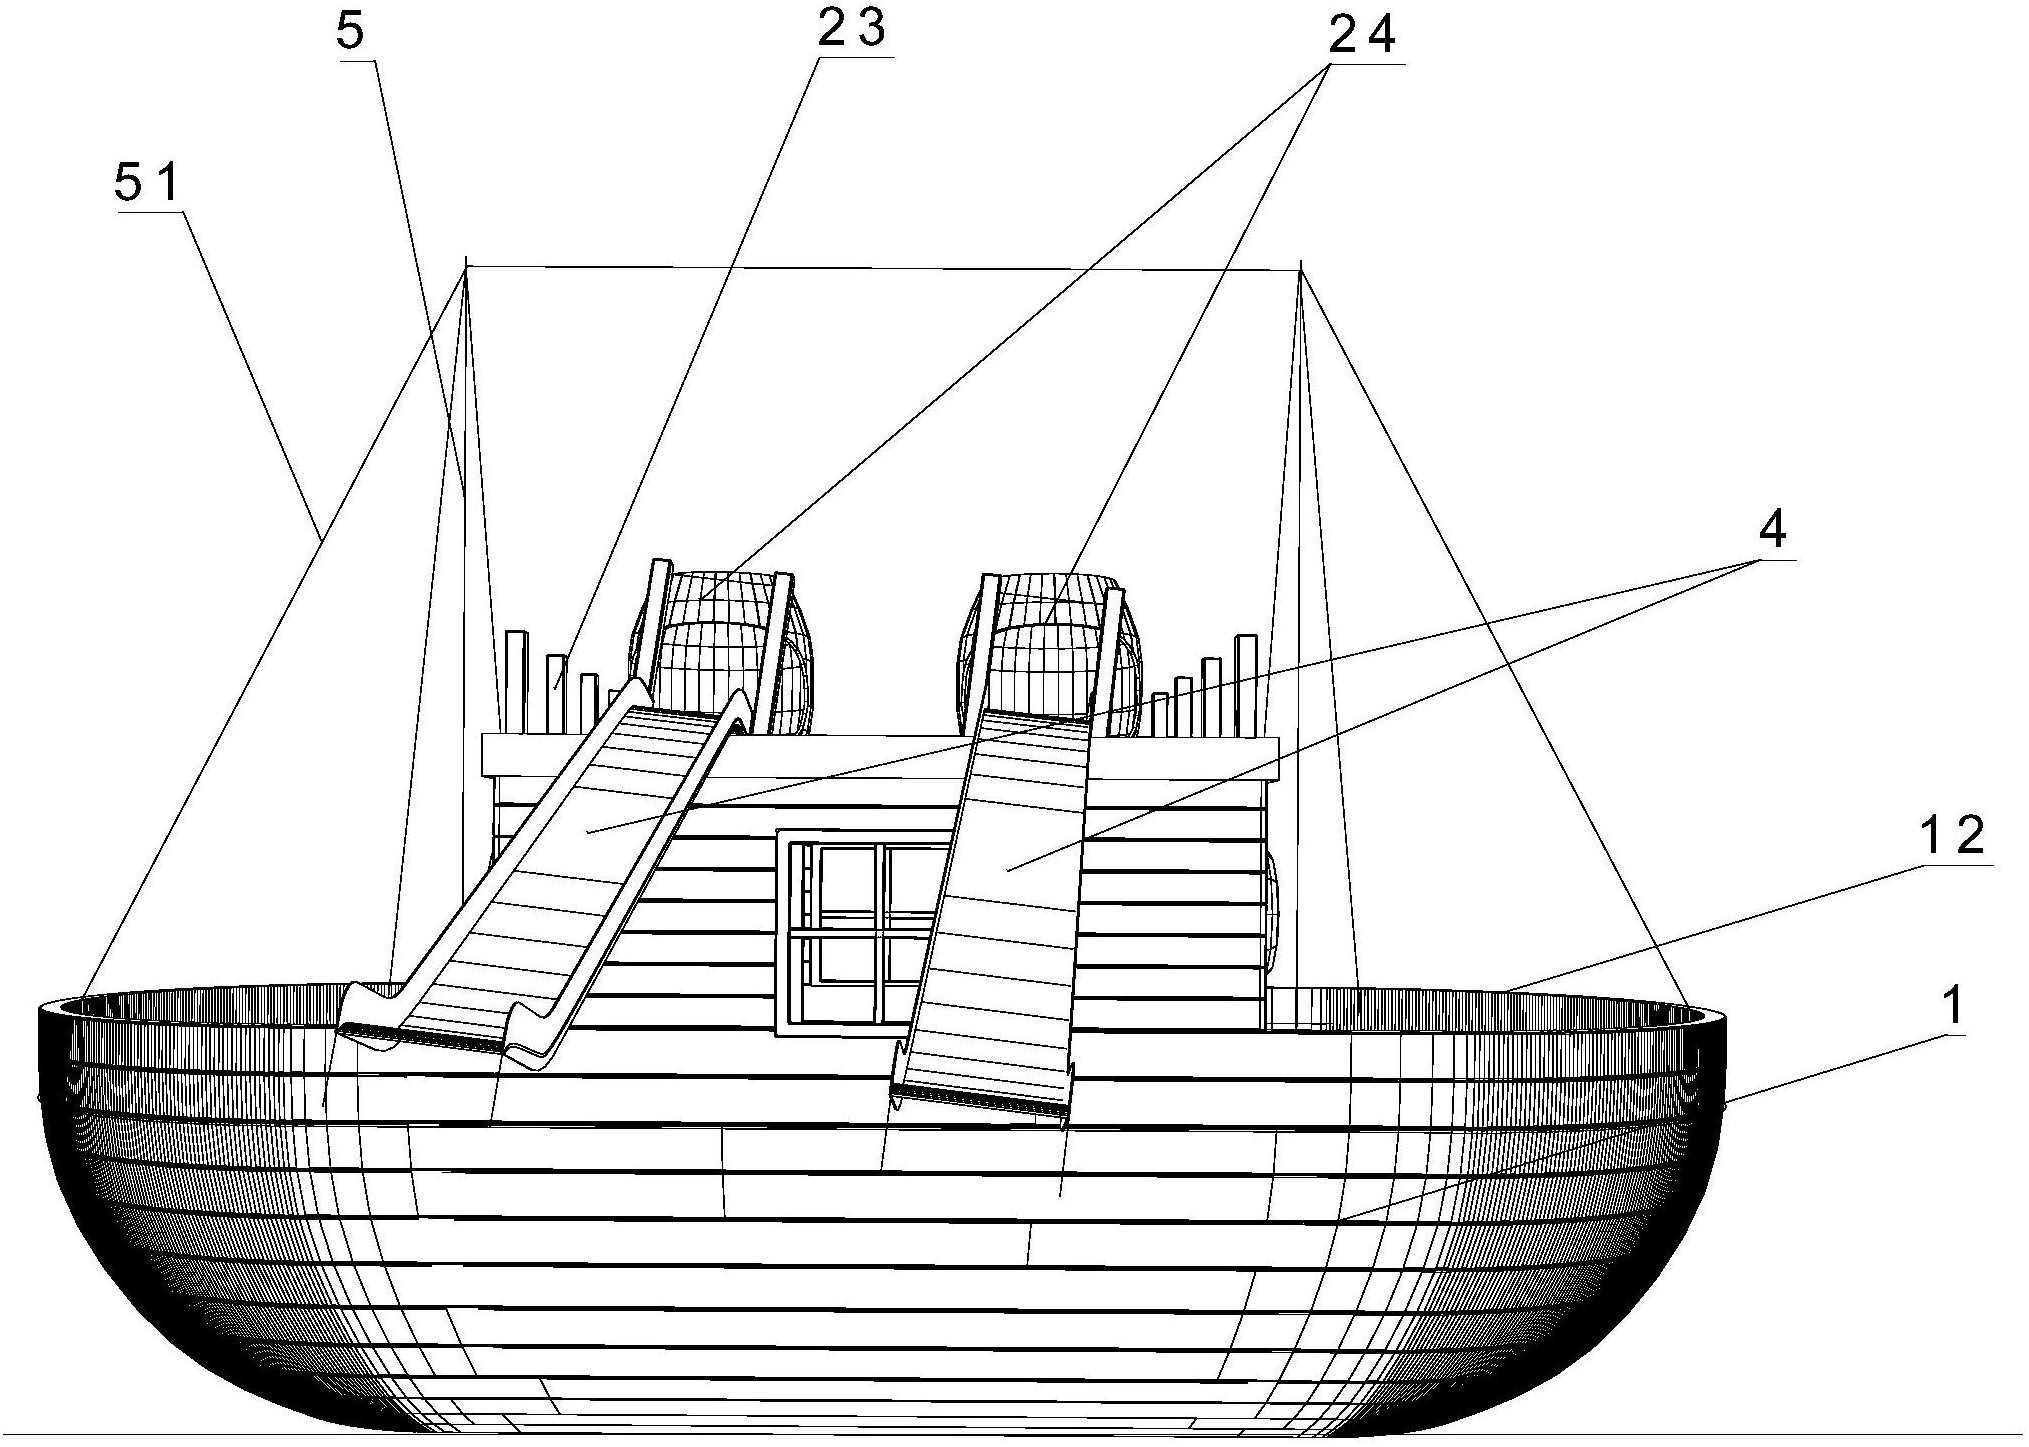 附图摘要本实用新型公开一种游乐海盗船,包括船体,船舱,攀爬网等结构